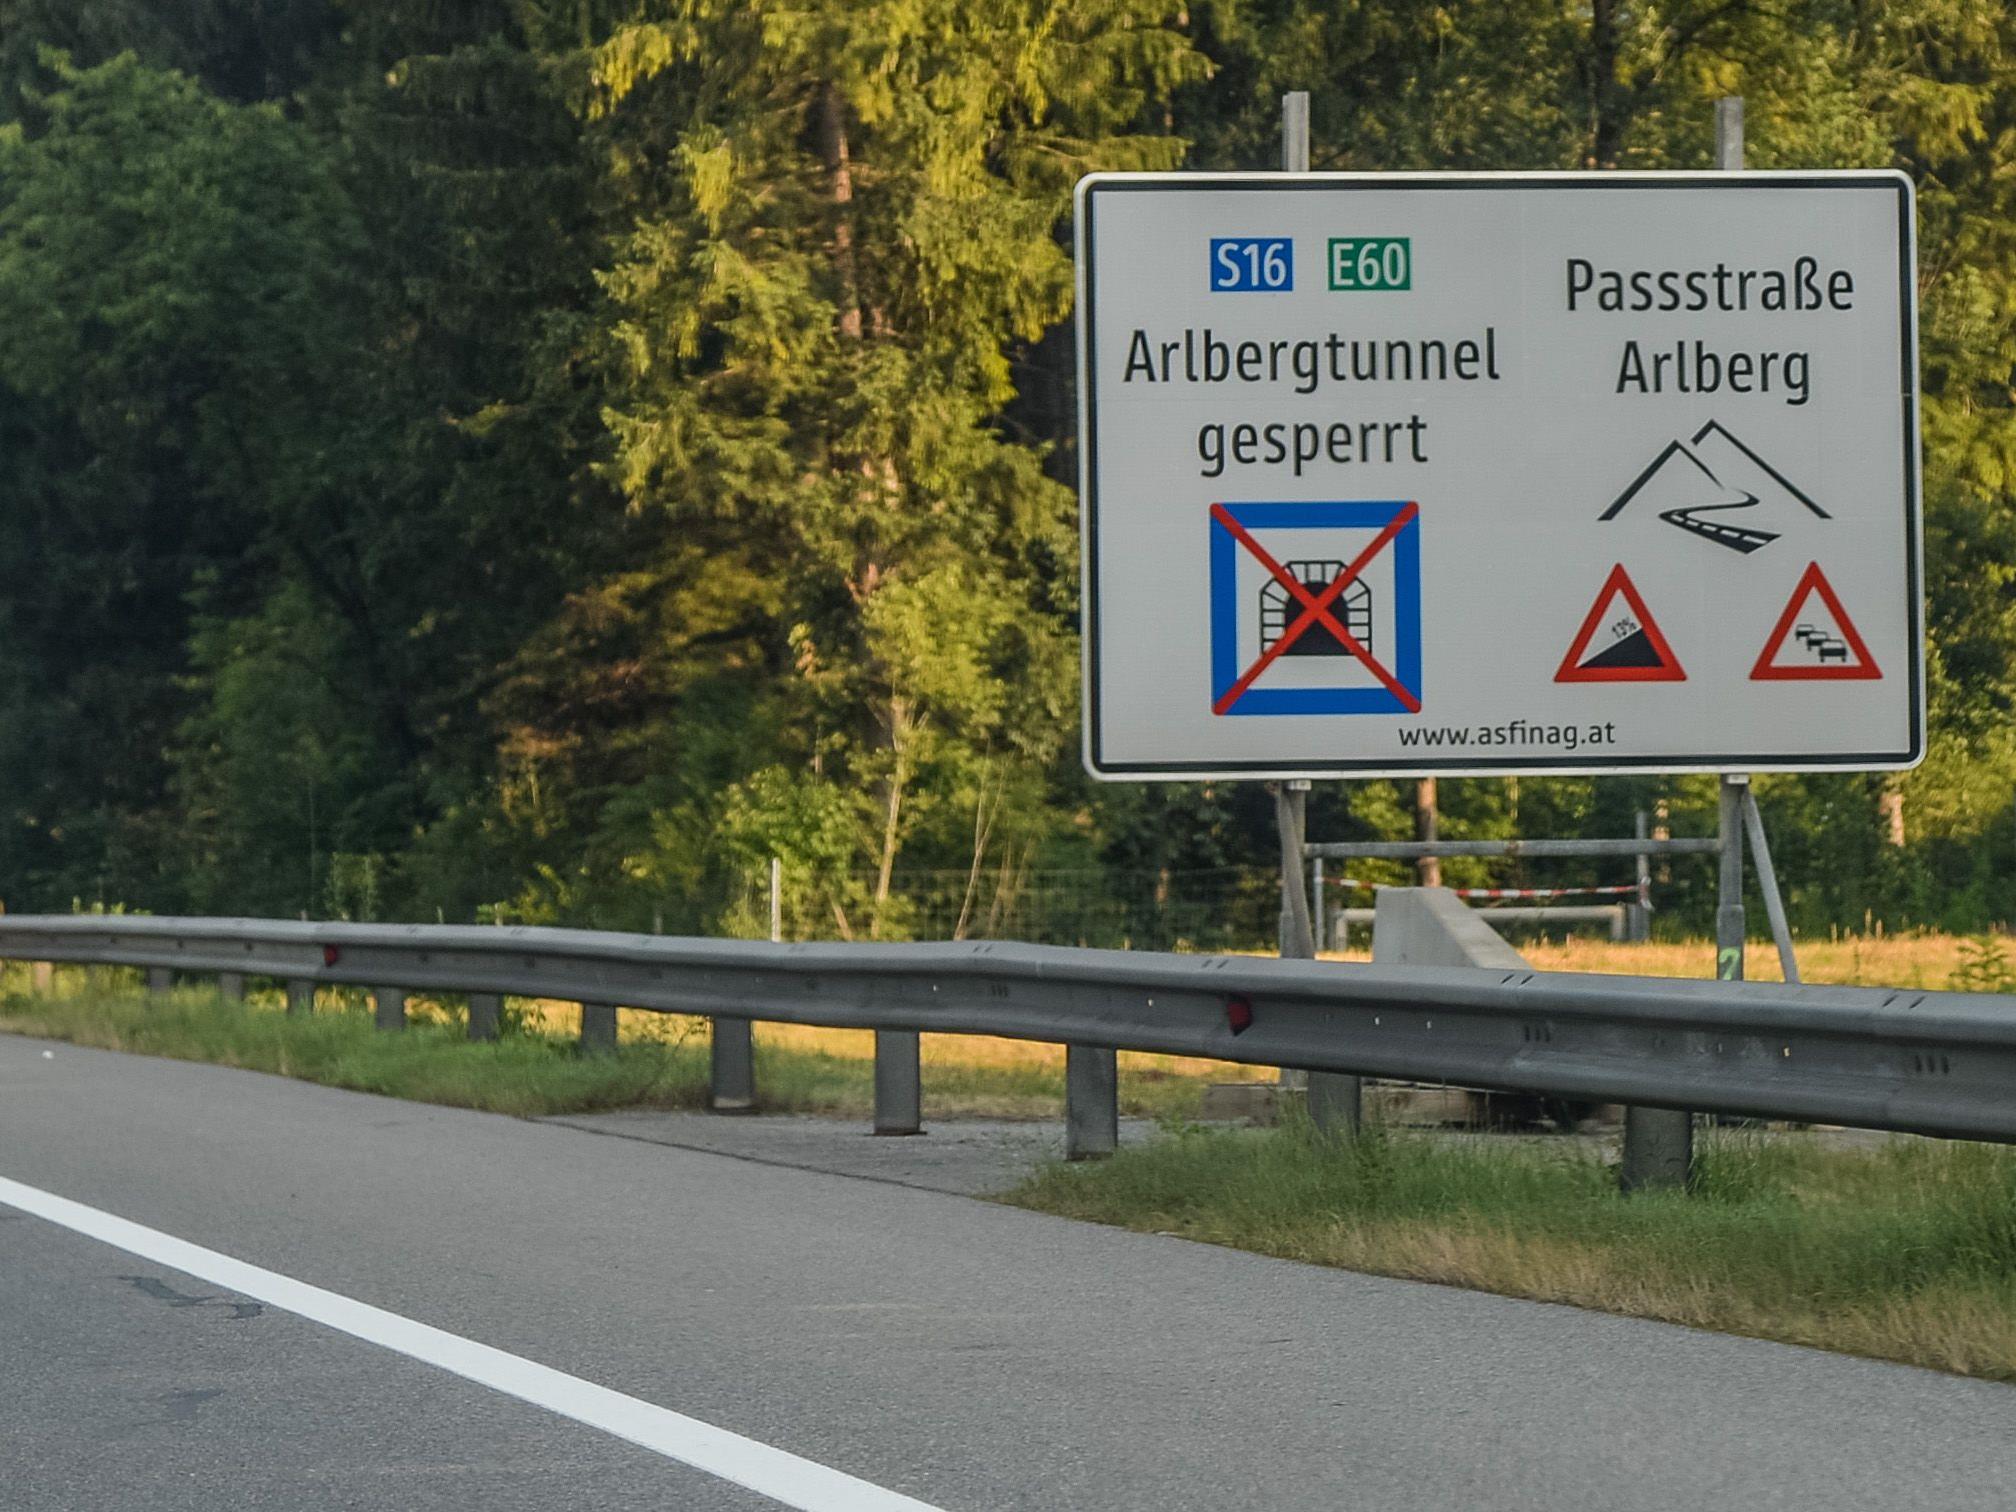 ASFINAG und Behörden empfehlen: Reiseinformation vor Fahrtantritt prüfen und ausreichend Zeit einplanen.